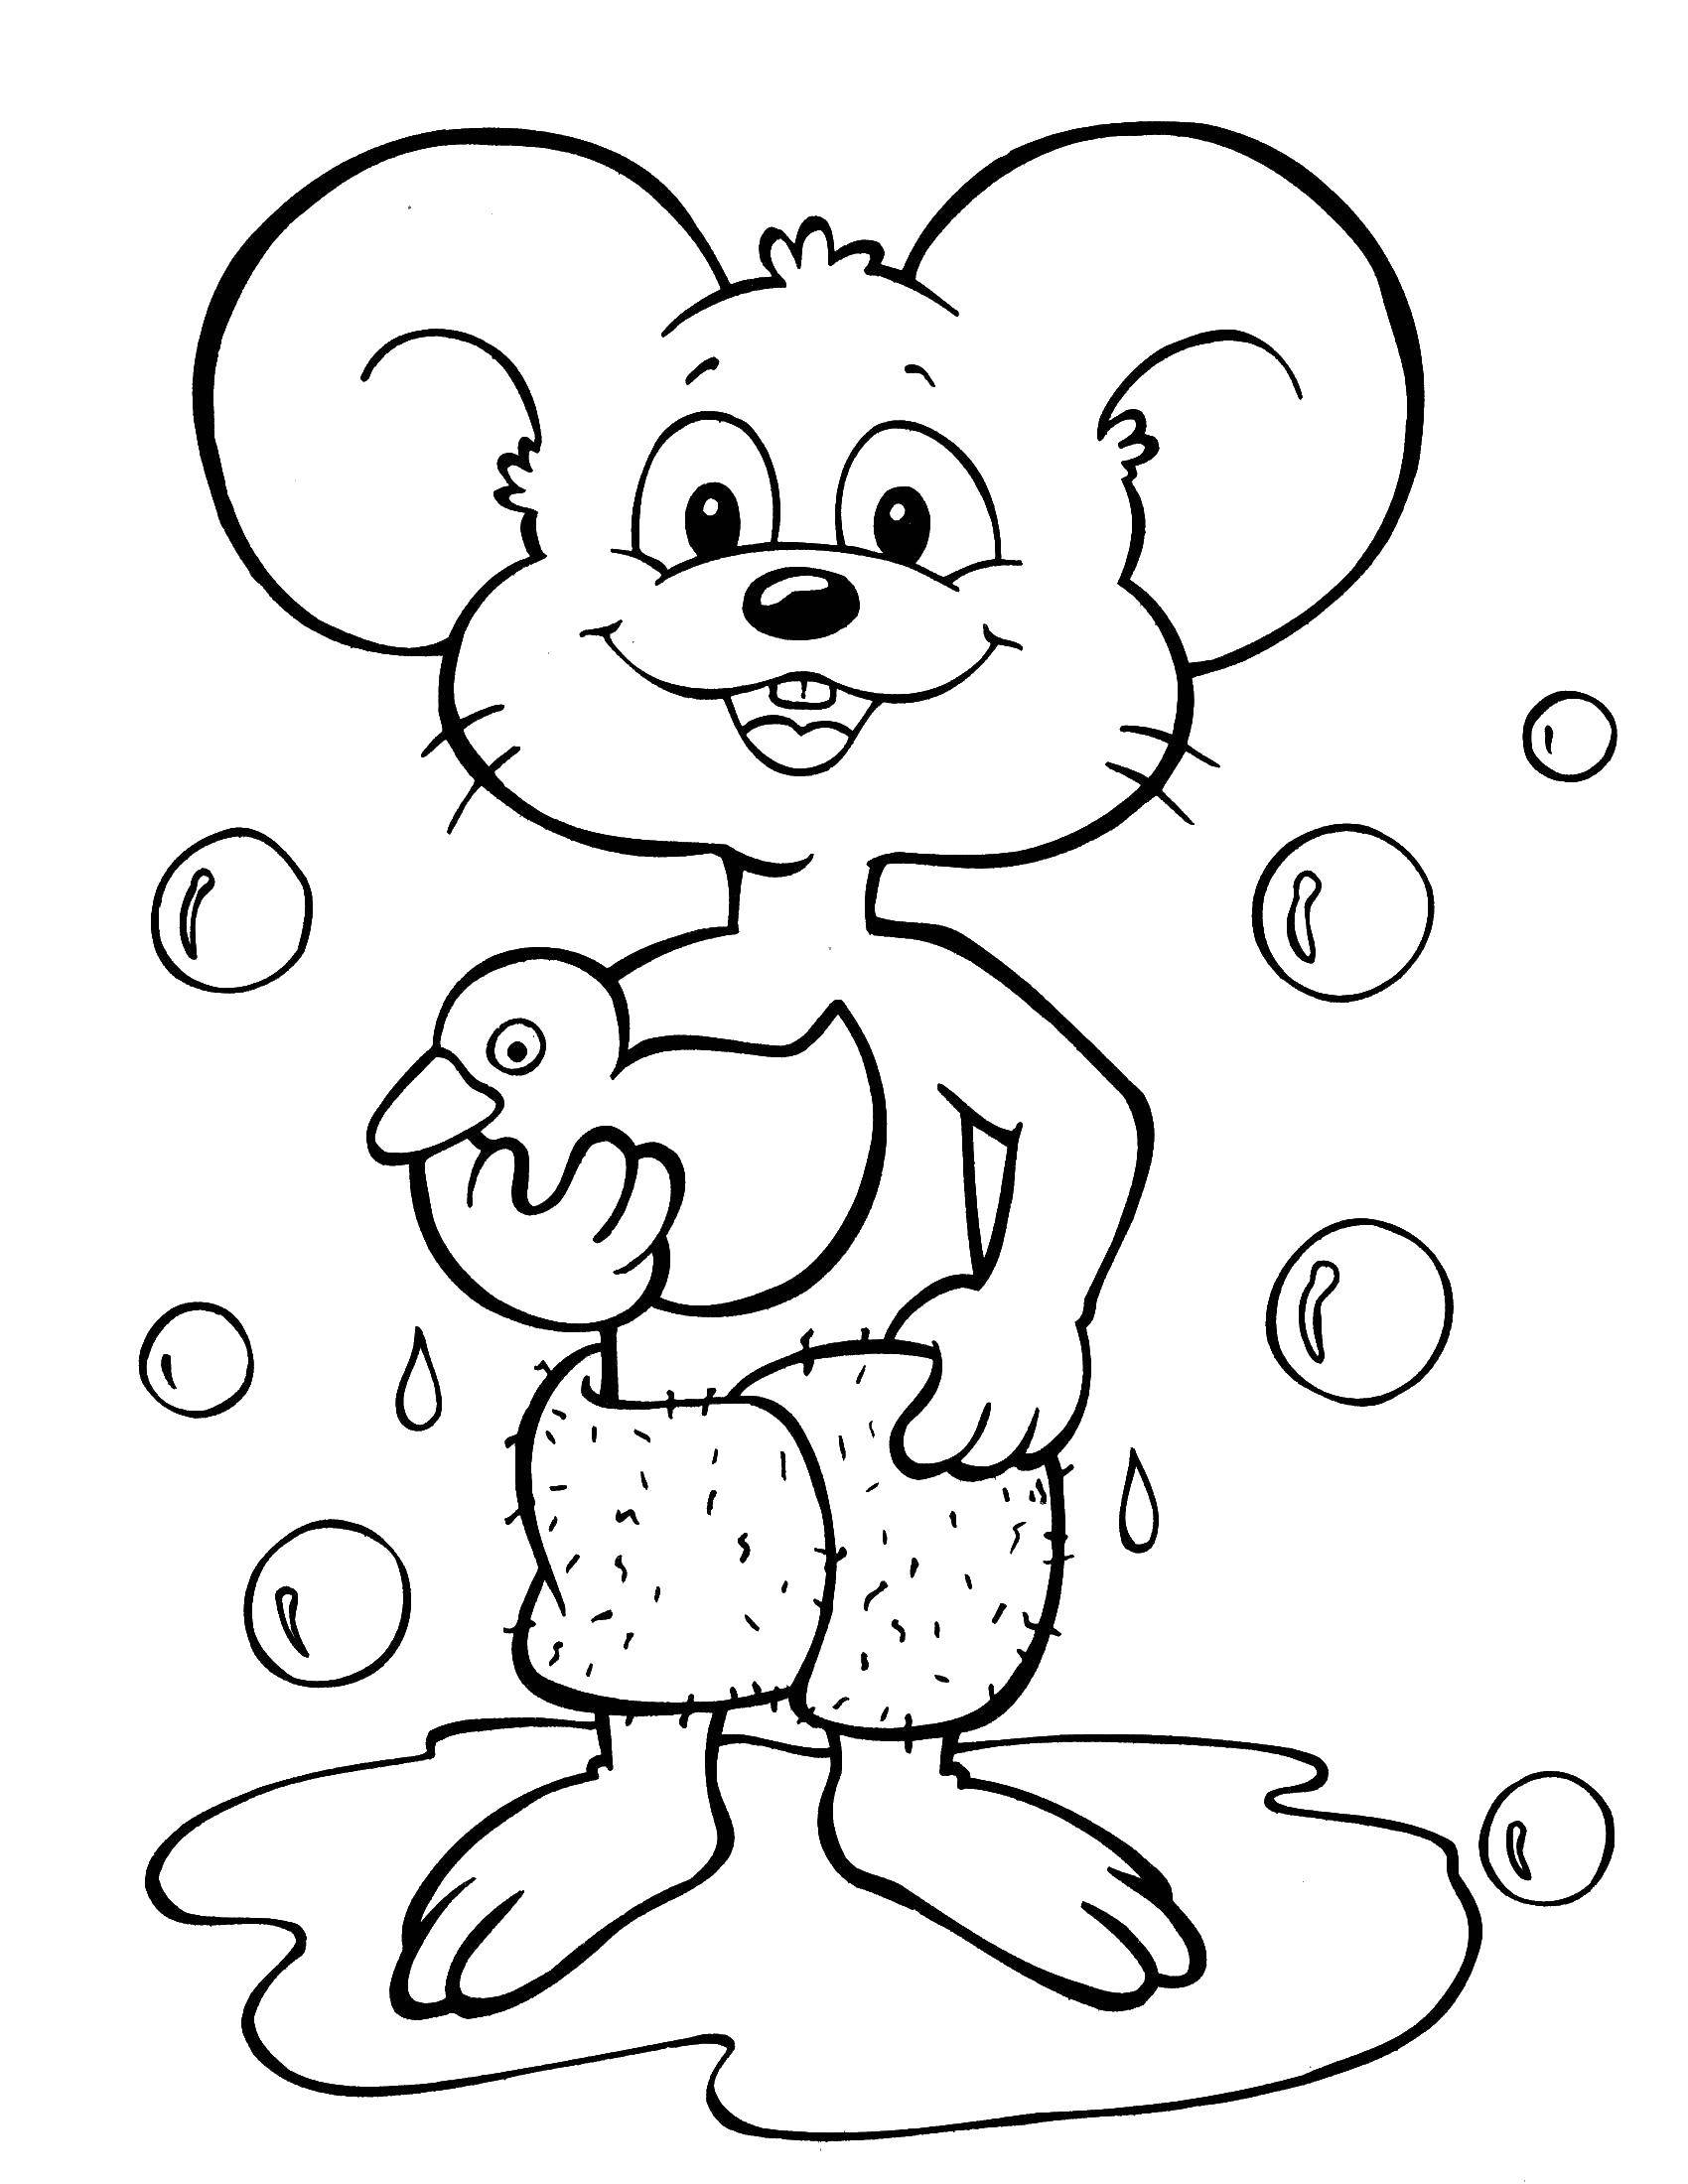 Название: Раскраска Мышь из душа. Категория: Животные. Теги: мышь, уточка, душ.